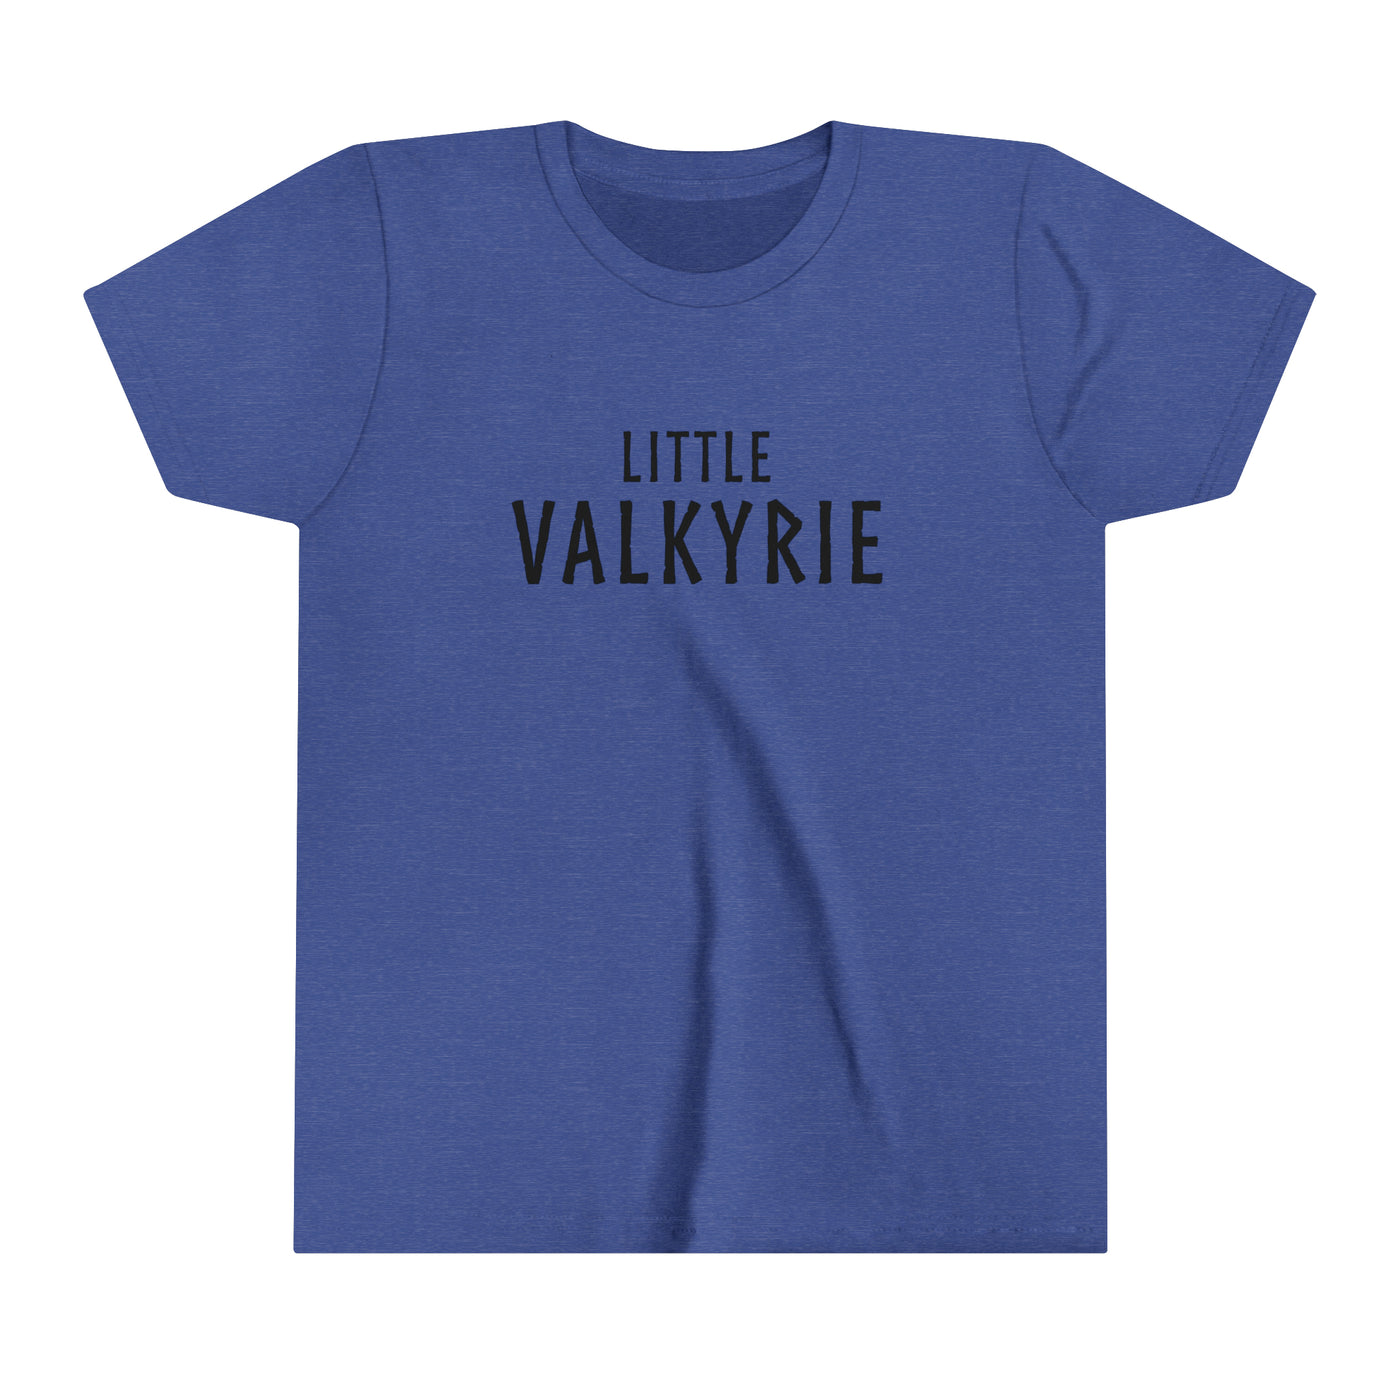 Little Valkyrie Kids T-Shirt